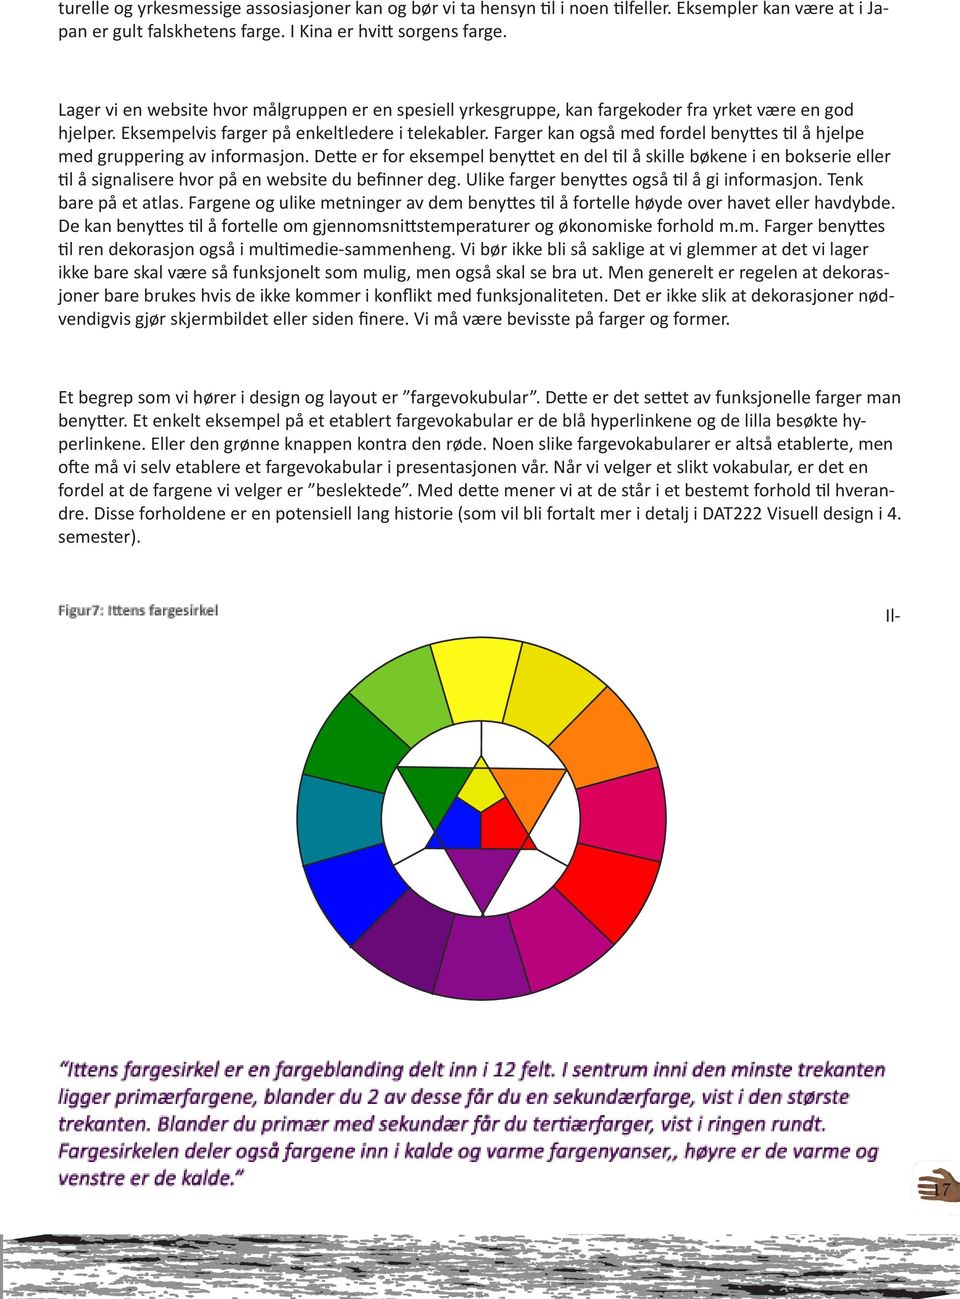 Farger kan også med fordel benyttes til å hjelpe med gruppering av informasjon.